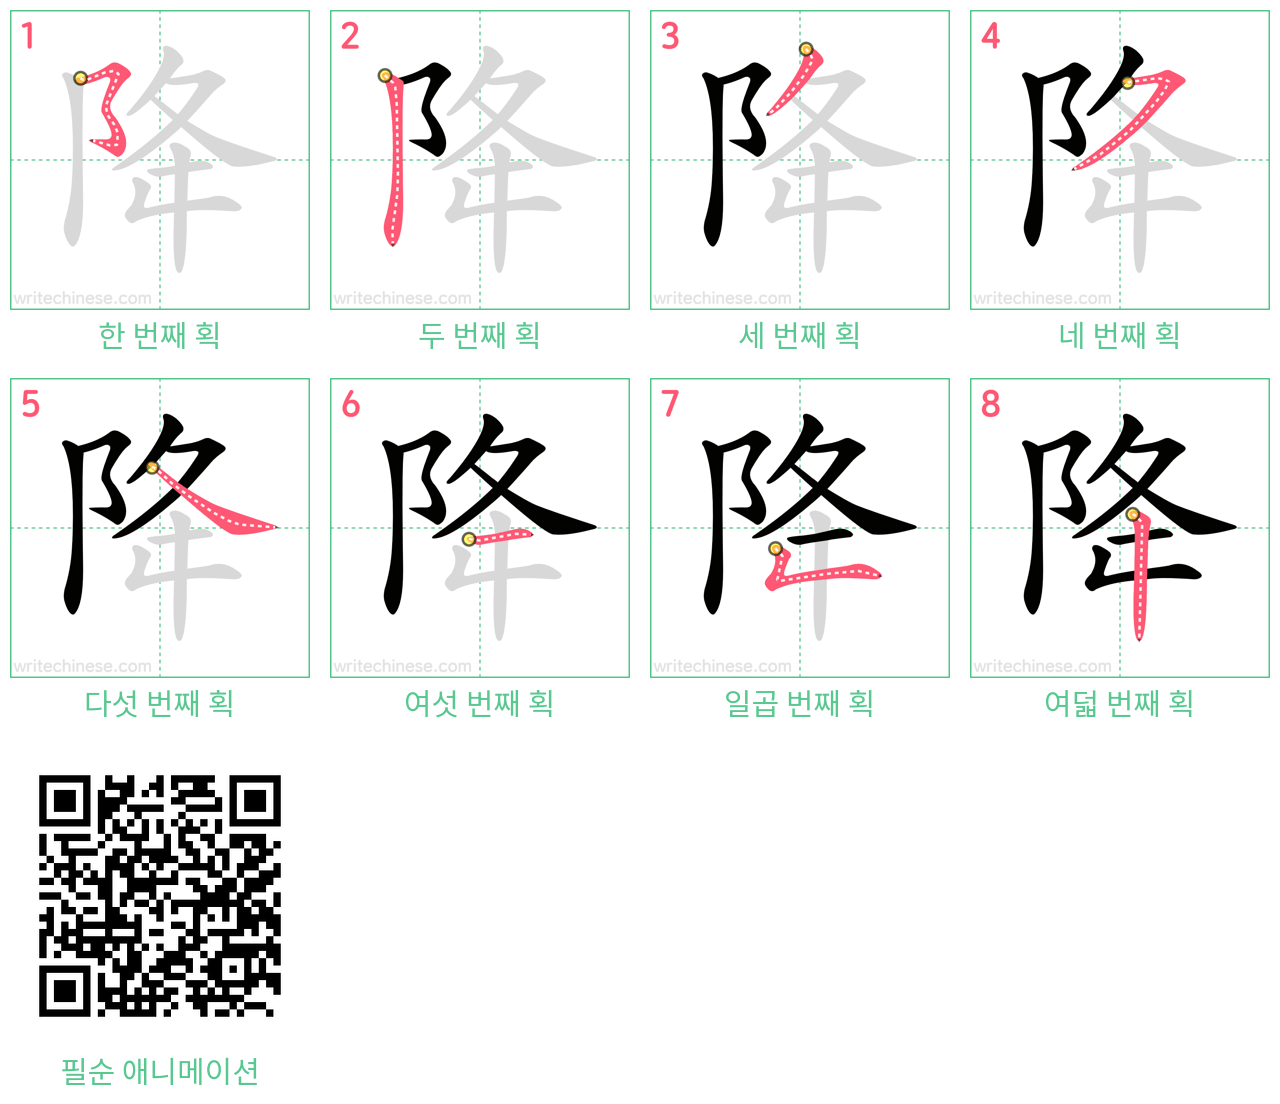 降 step-by-step stroke order diagrams